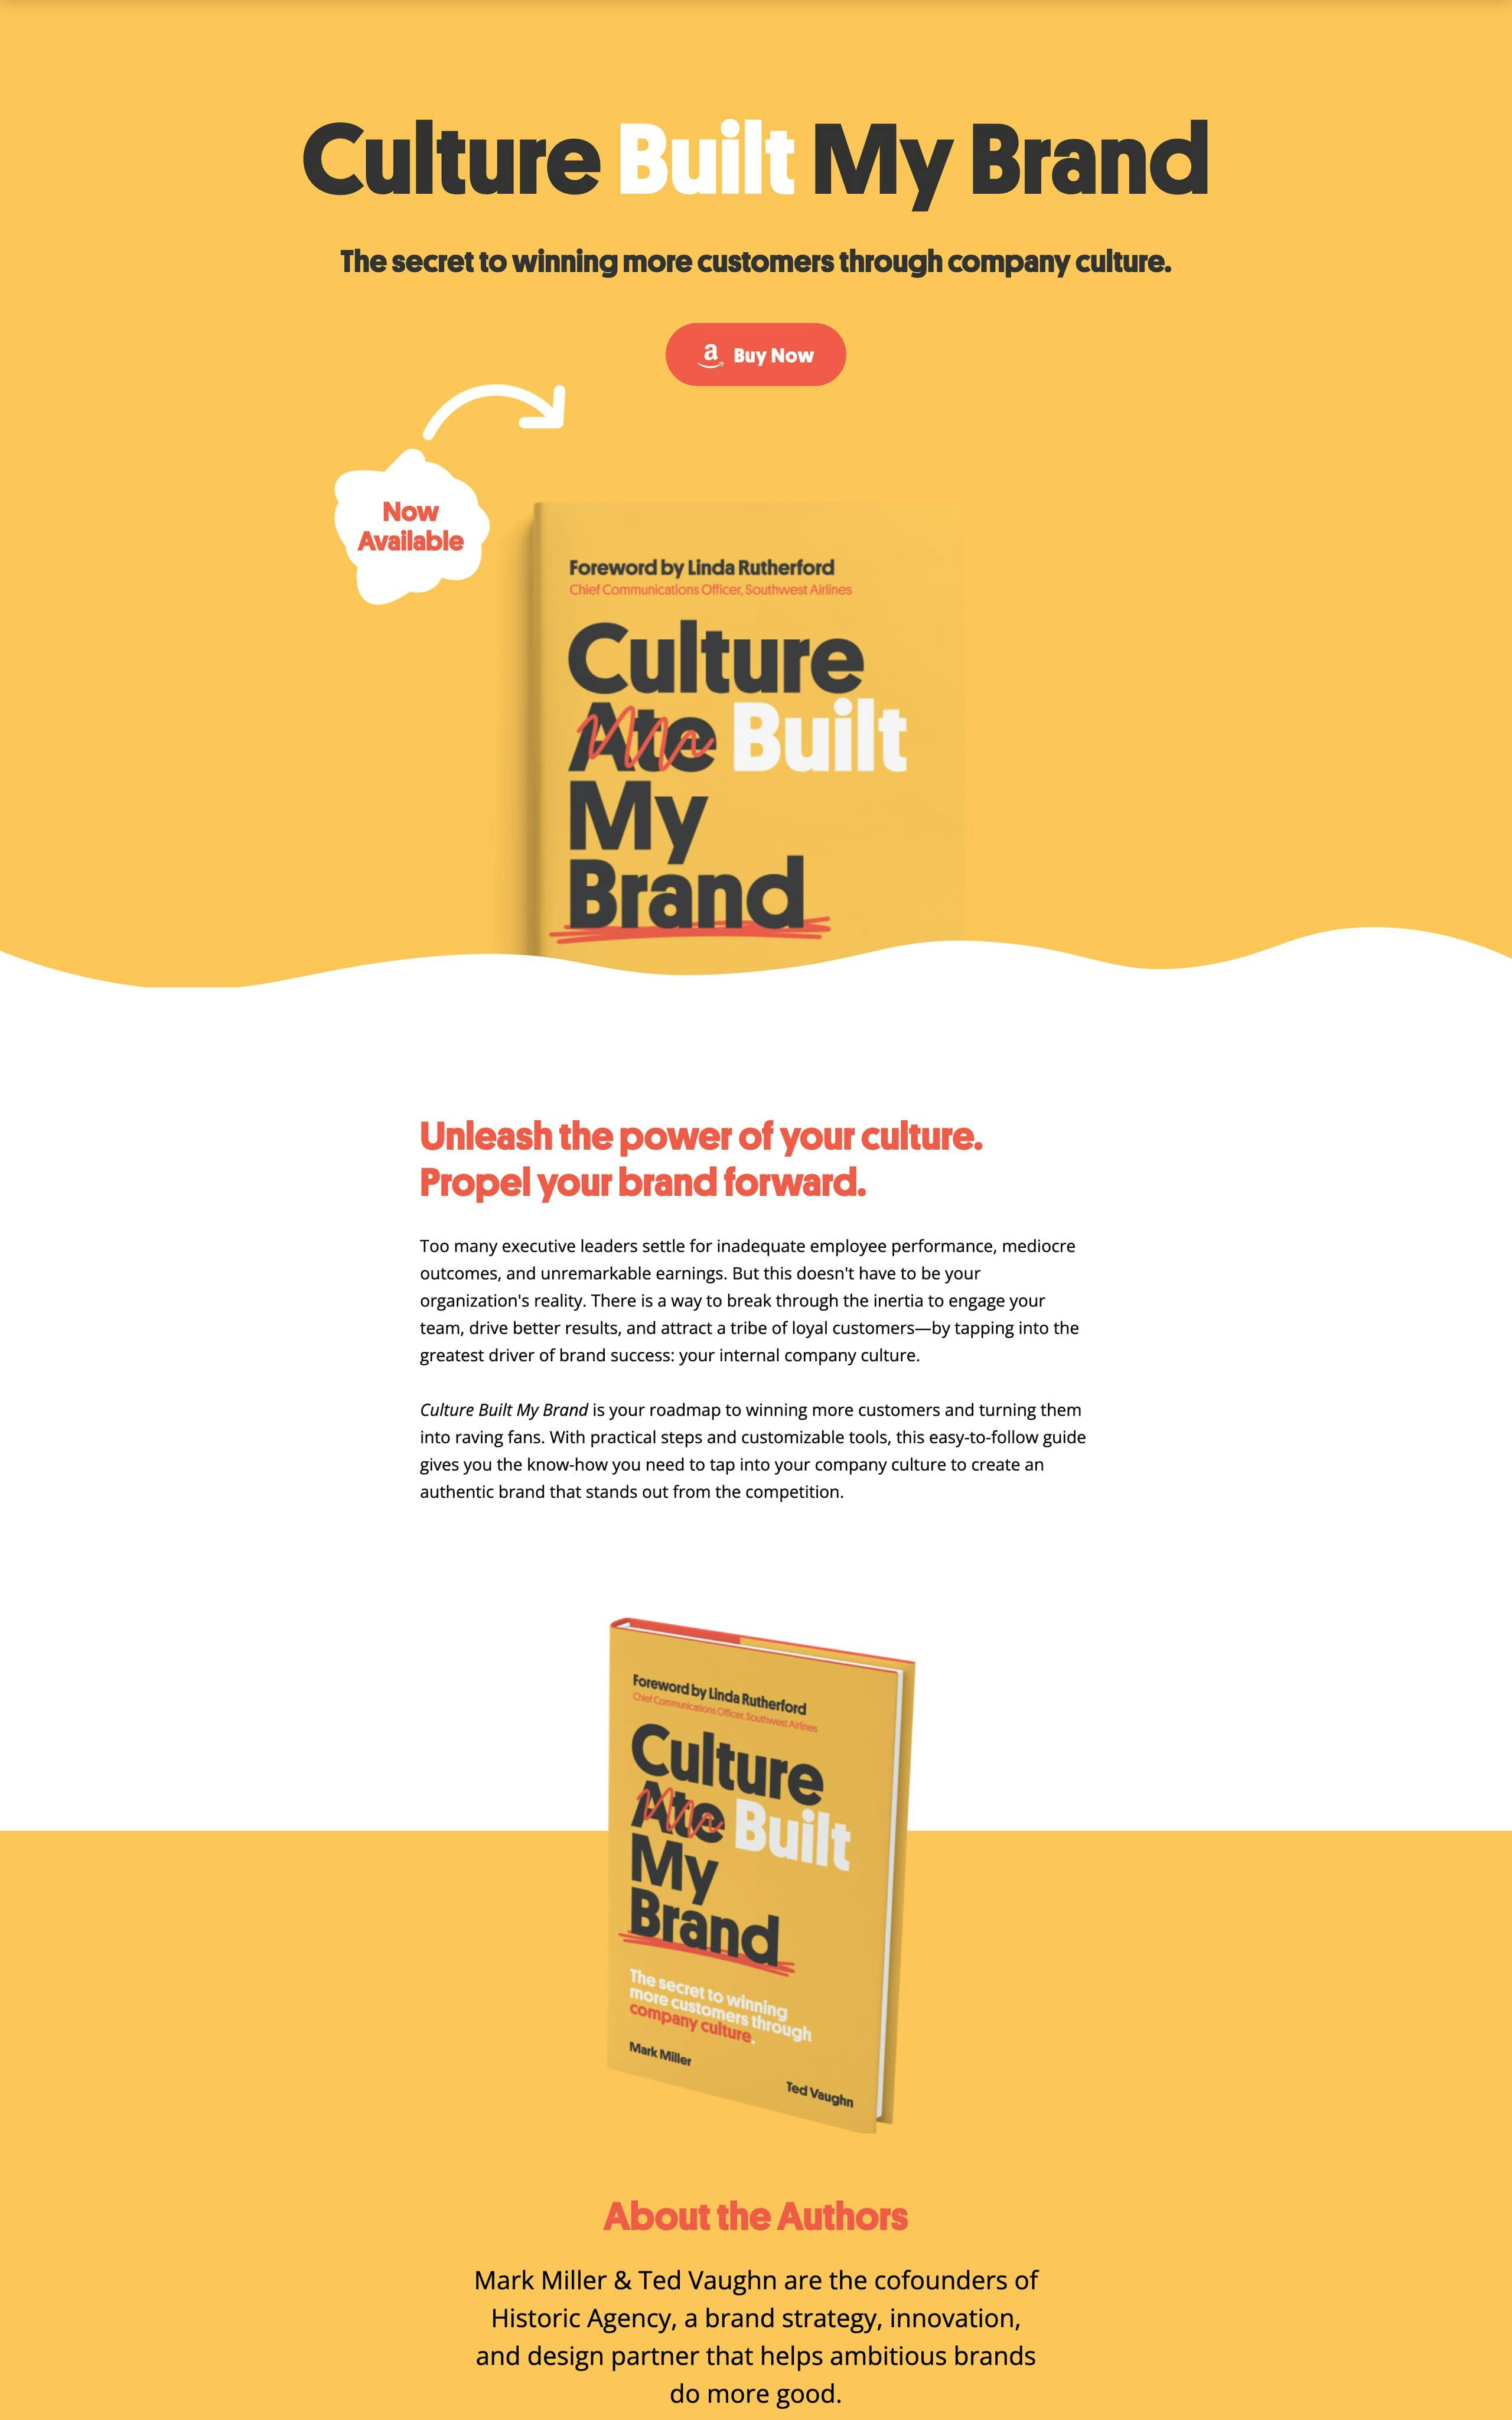 Culture Built My Brand Website Screenshot